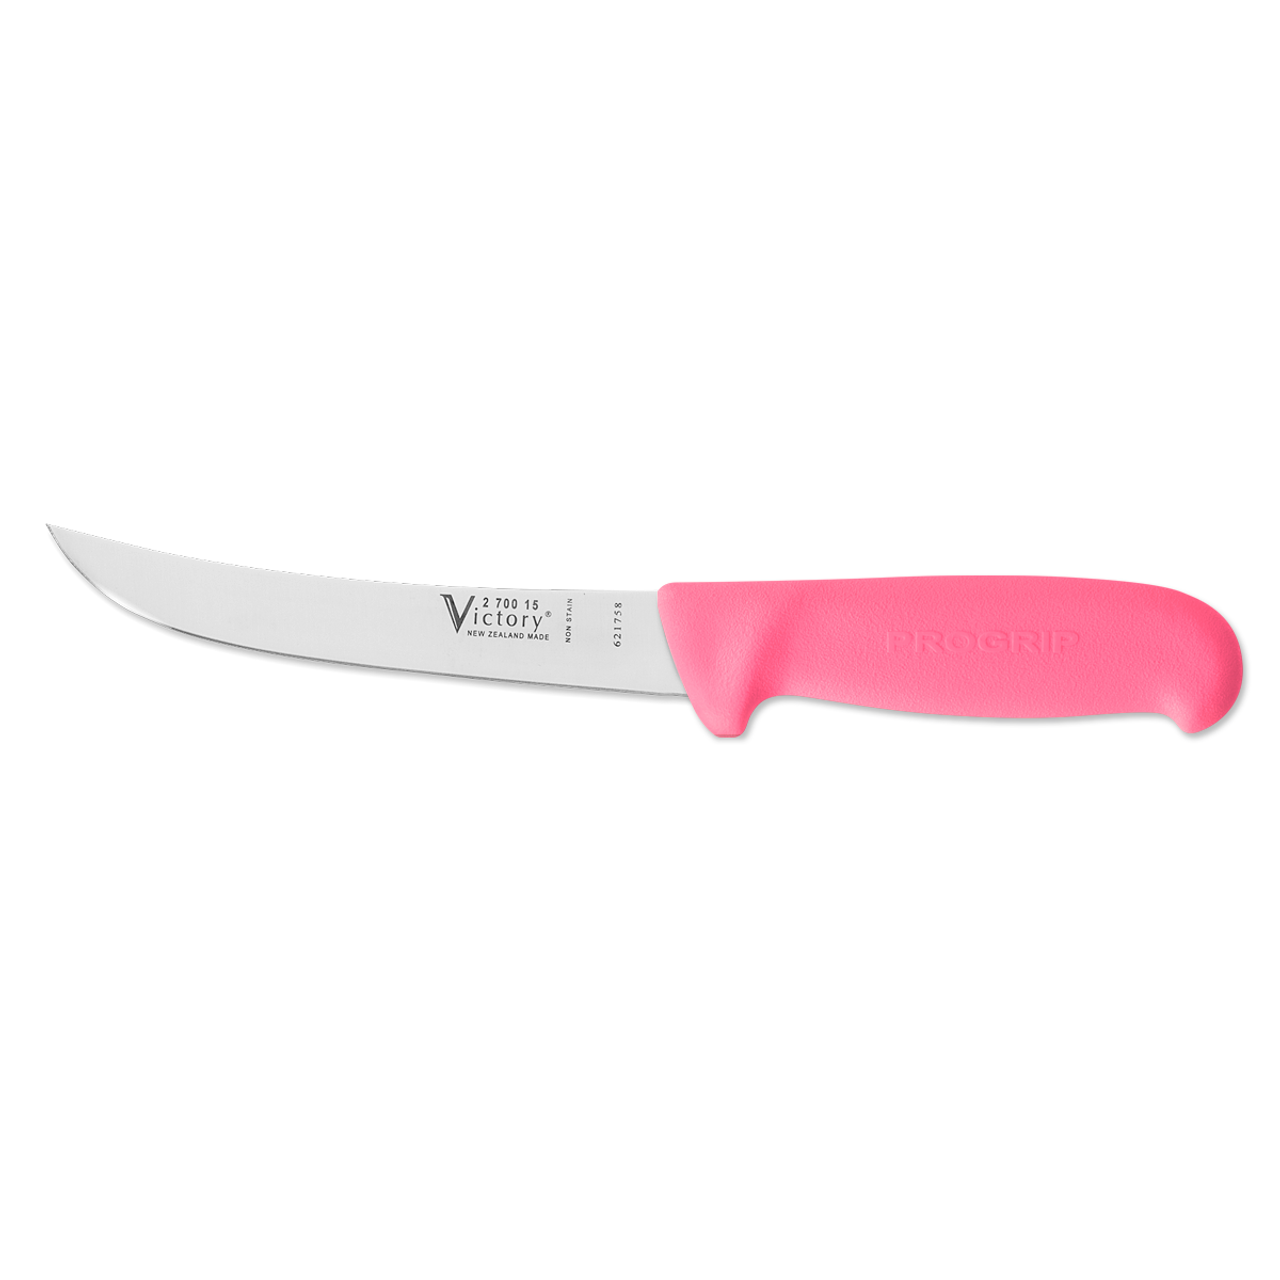 6" - 15cm -- Boning Knife - Wide Curved - 2/700/15/200PK - ProGrip - "Pink"